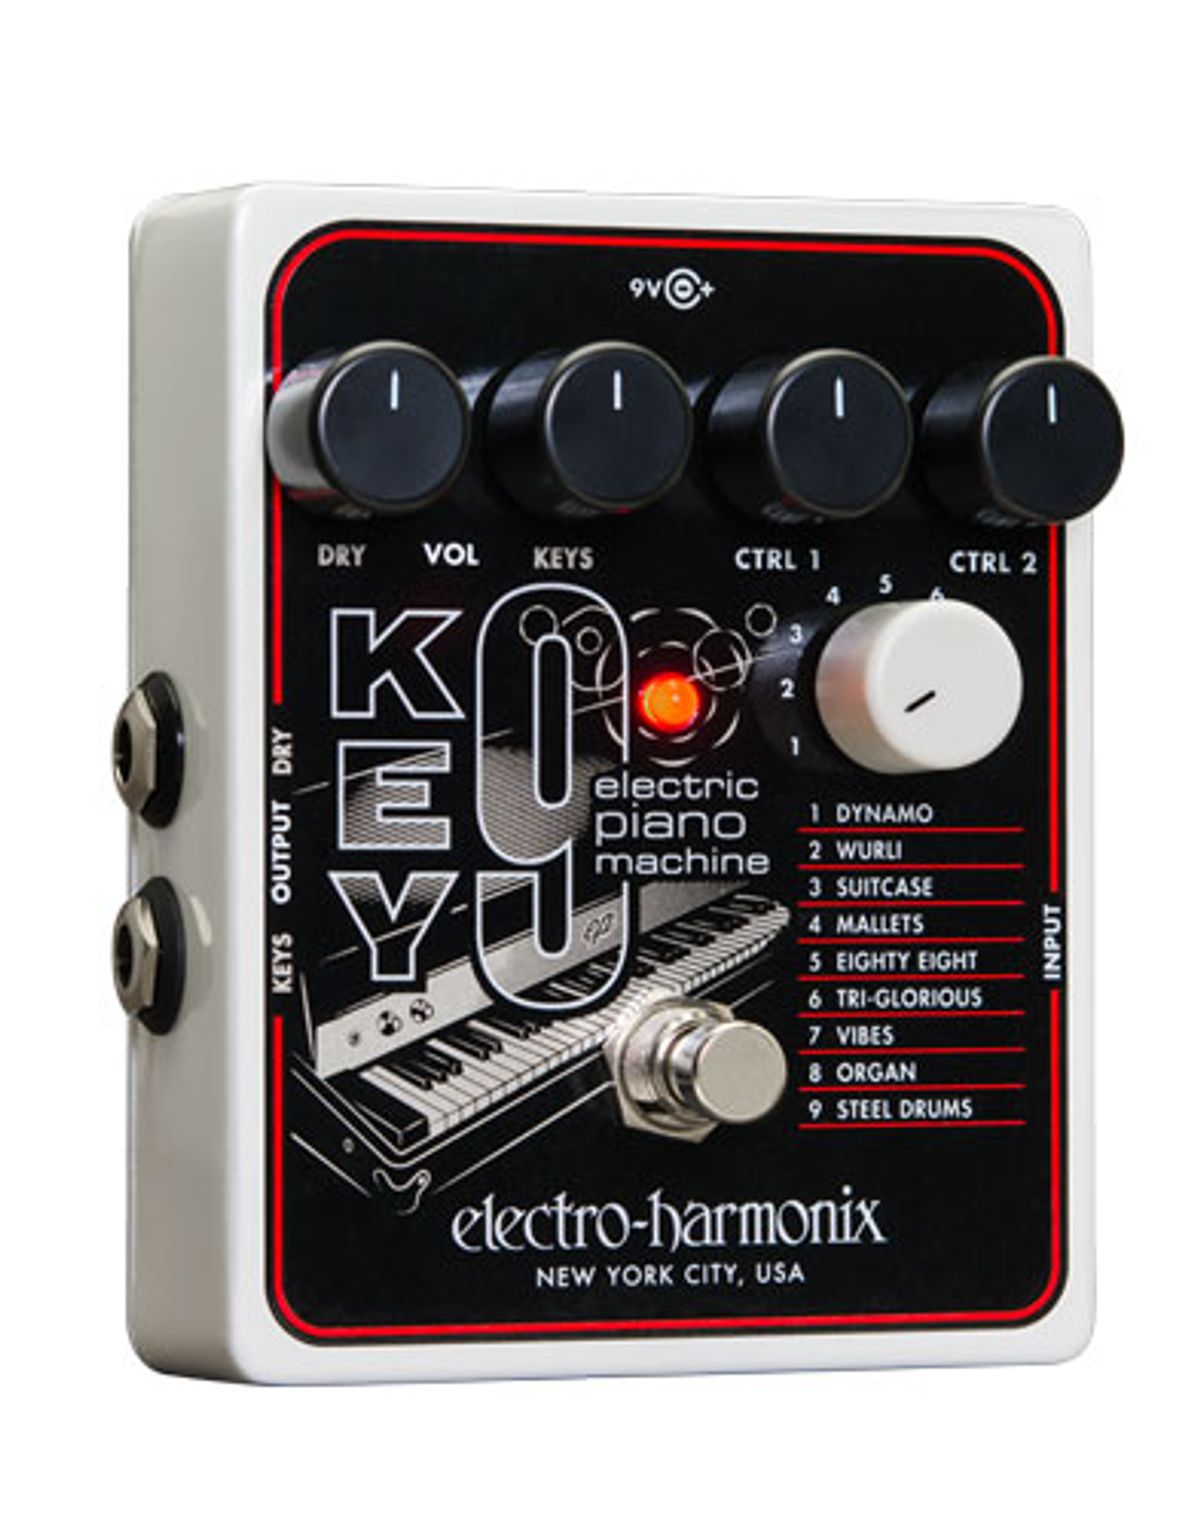 Electro-Harmonix Releases the KEY9